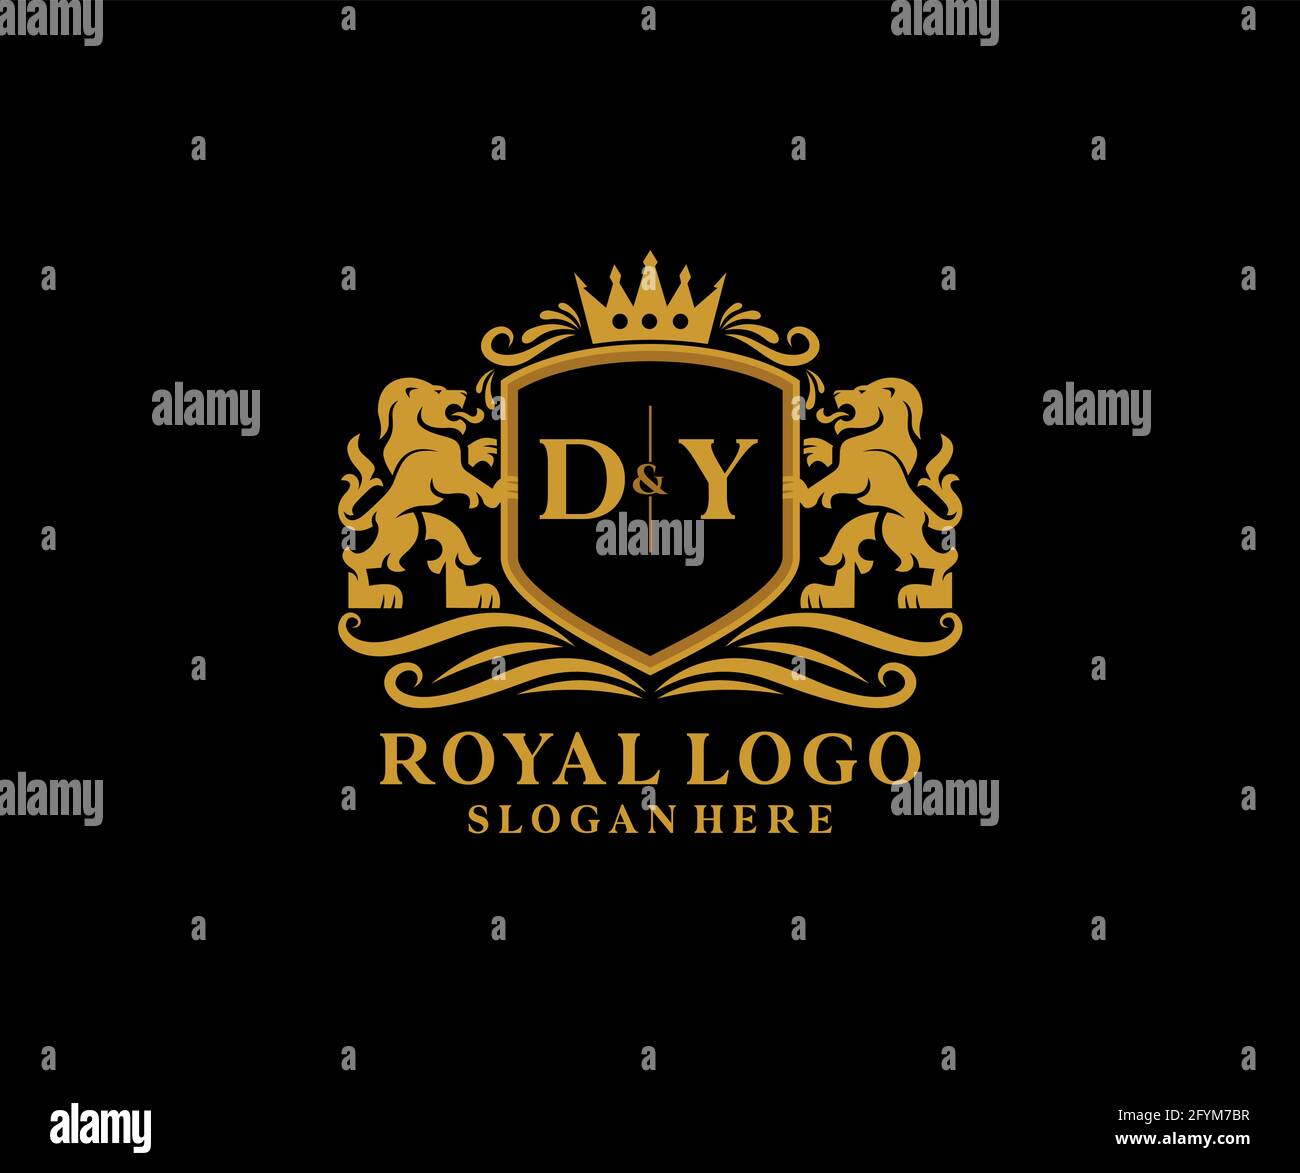 DY Letter Lion Royal Luxury Logo Vorlage in Vektorgrafik für Restaurant, Royalty, Boutique, Cafe, Hotel, Wappentisch, Schmuck, Mode und andere Vektor il Stock Vektor